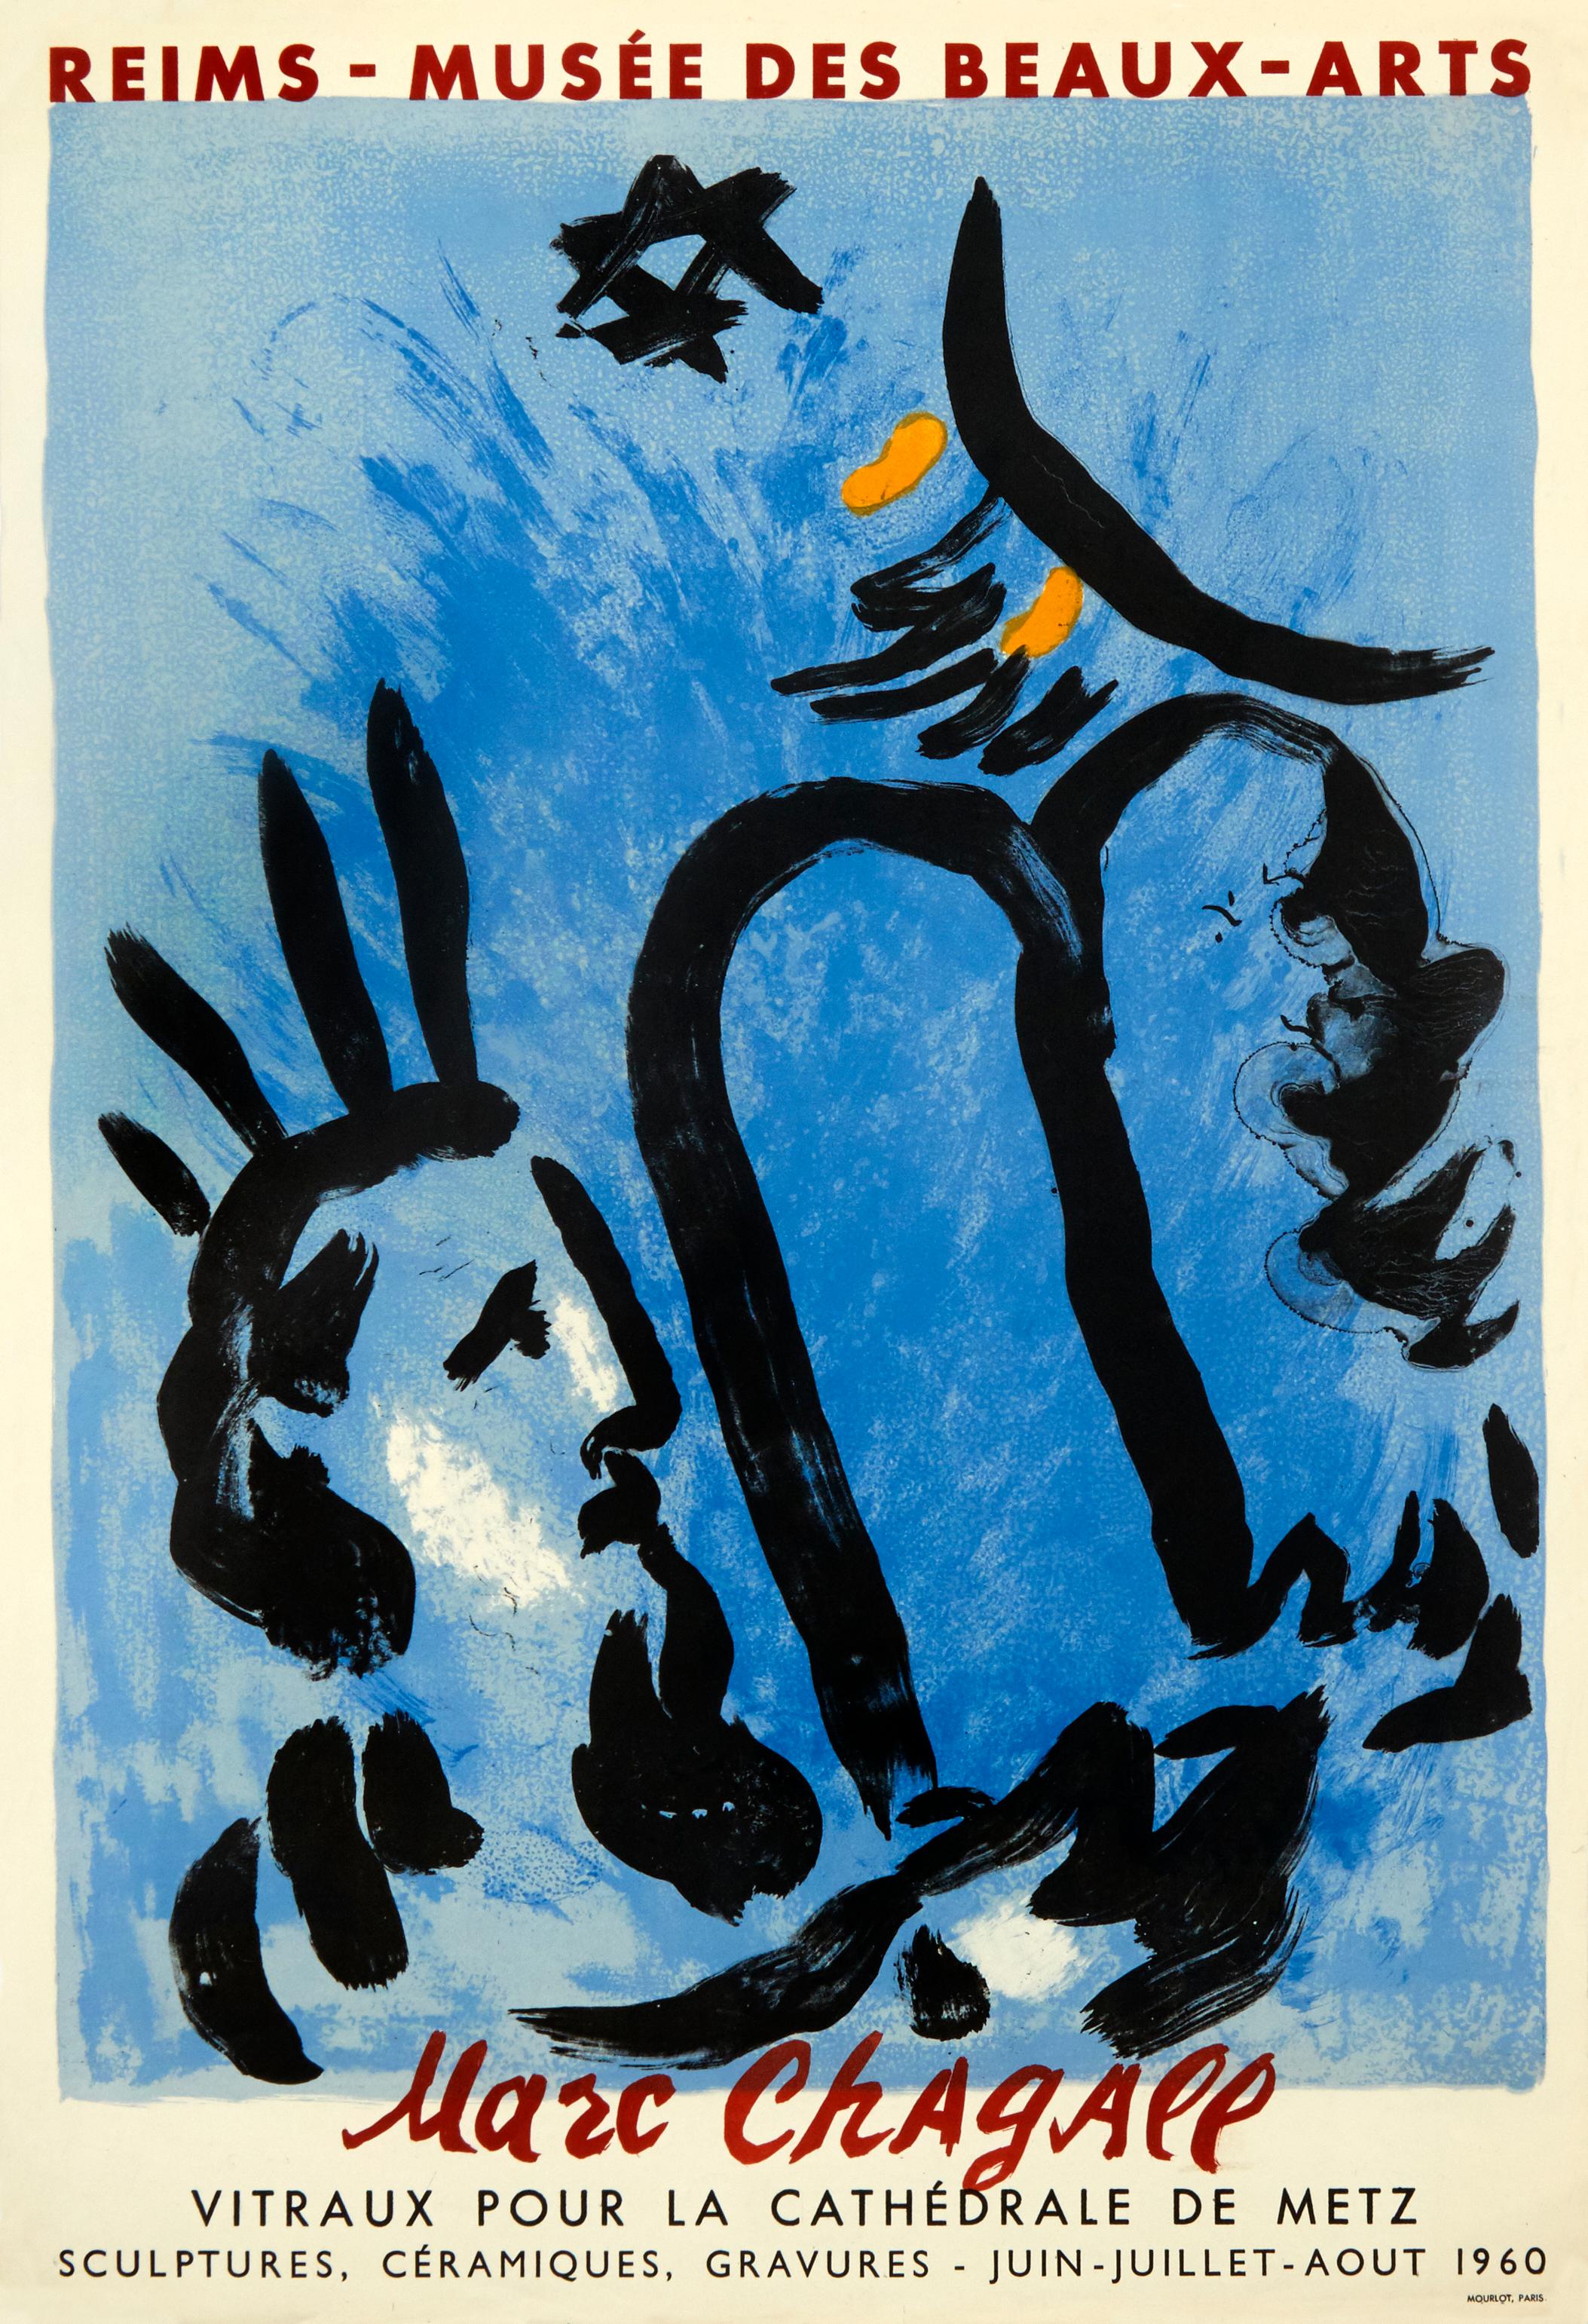 "Wenn ich mit dem Herzen schaffe, funktioniert fast alles, wenn mit dem Kopf, fast nichts." - Marc Chagall

Dieses originale lithografische Plakat wurde 1960 von Marc Chagall für eine Ausstellung zu Ehren seiner Glasfenster in der Kathedrale von